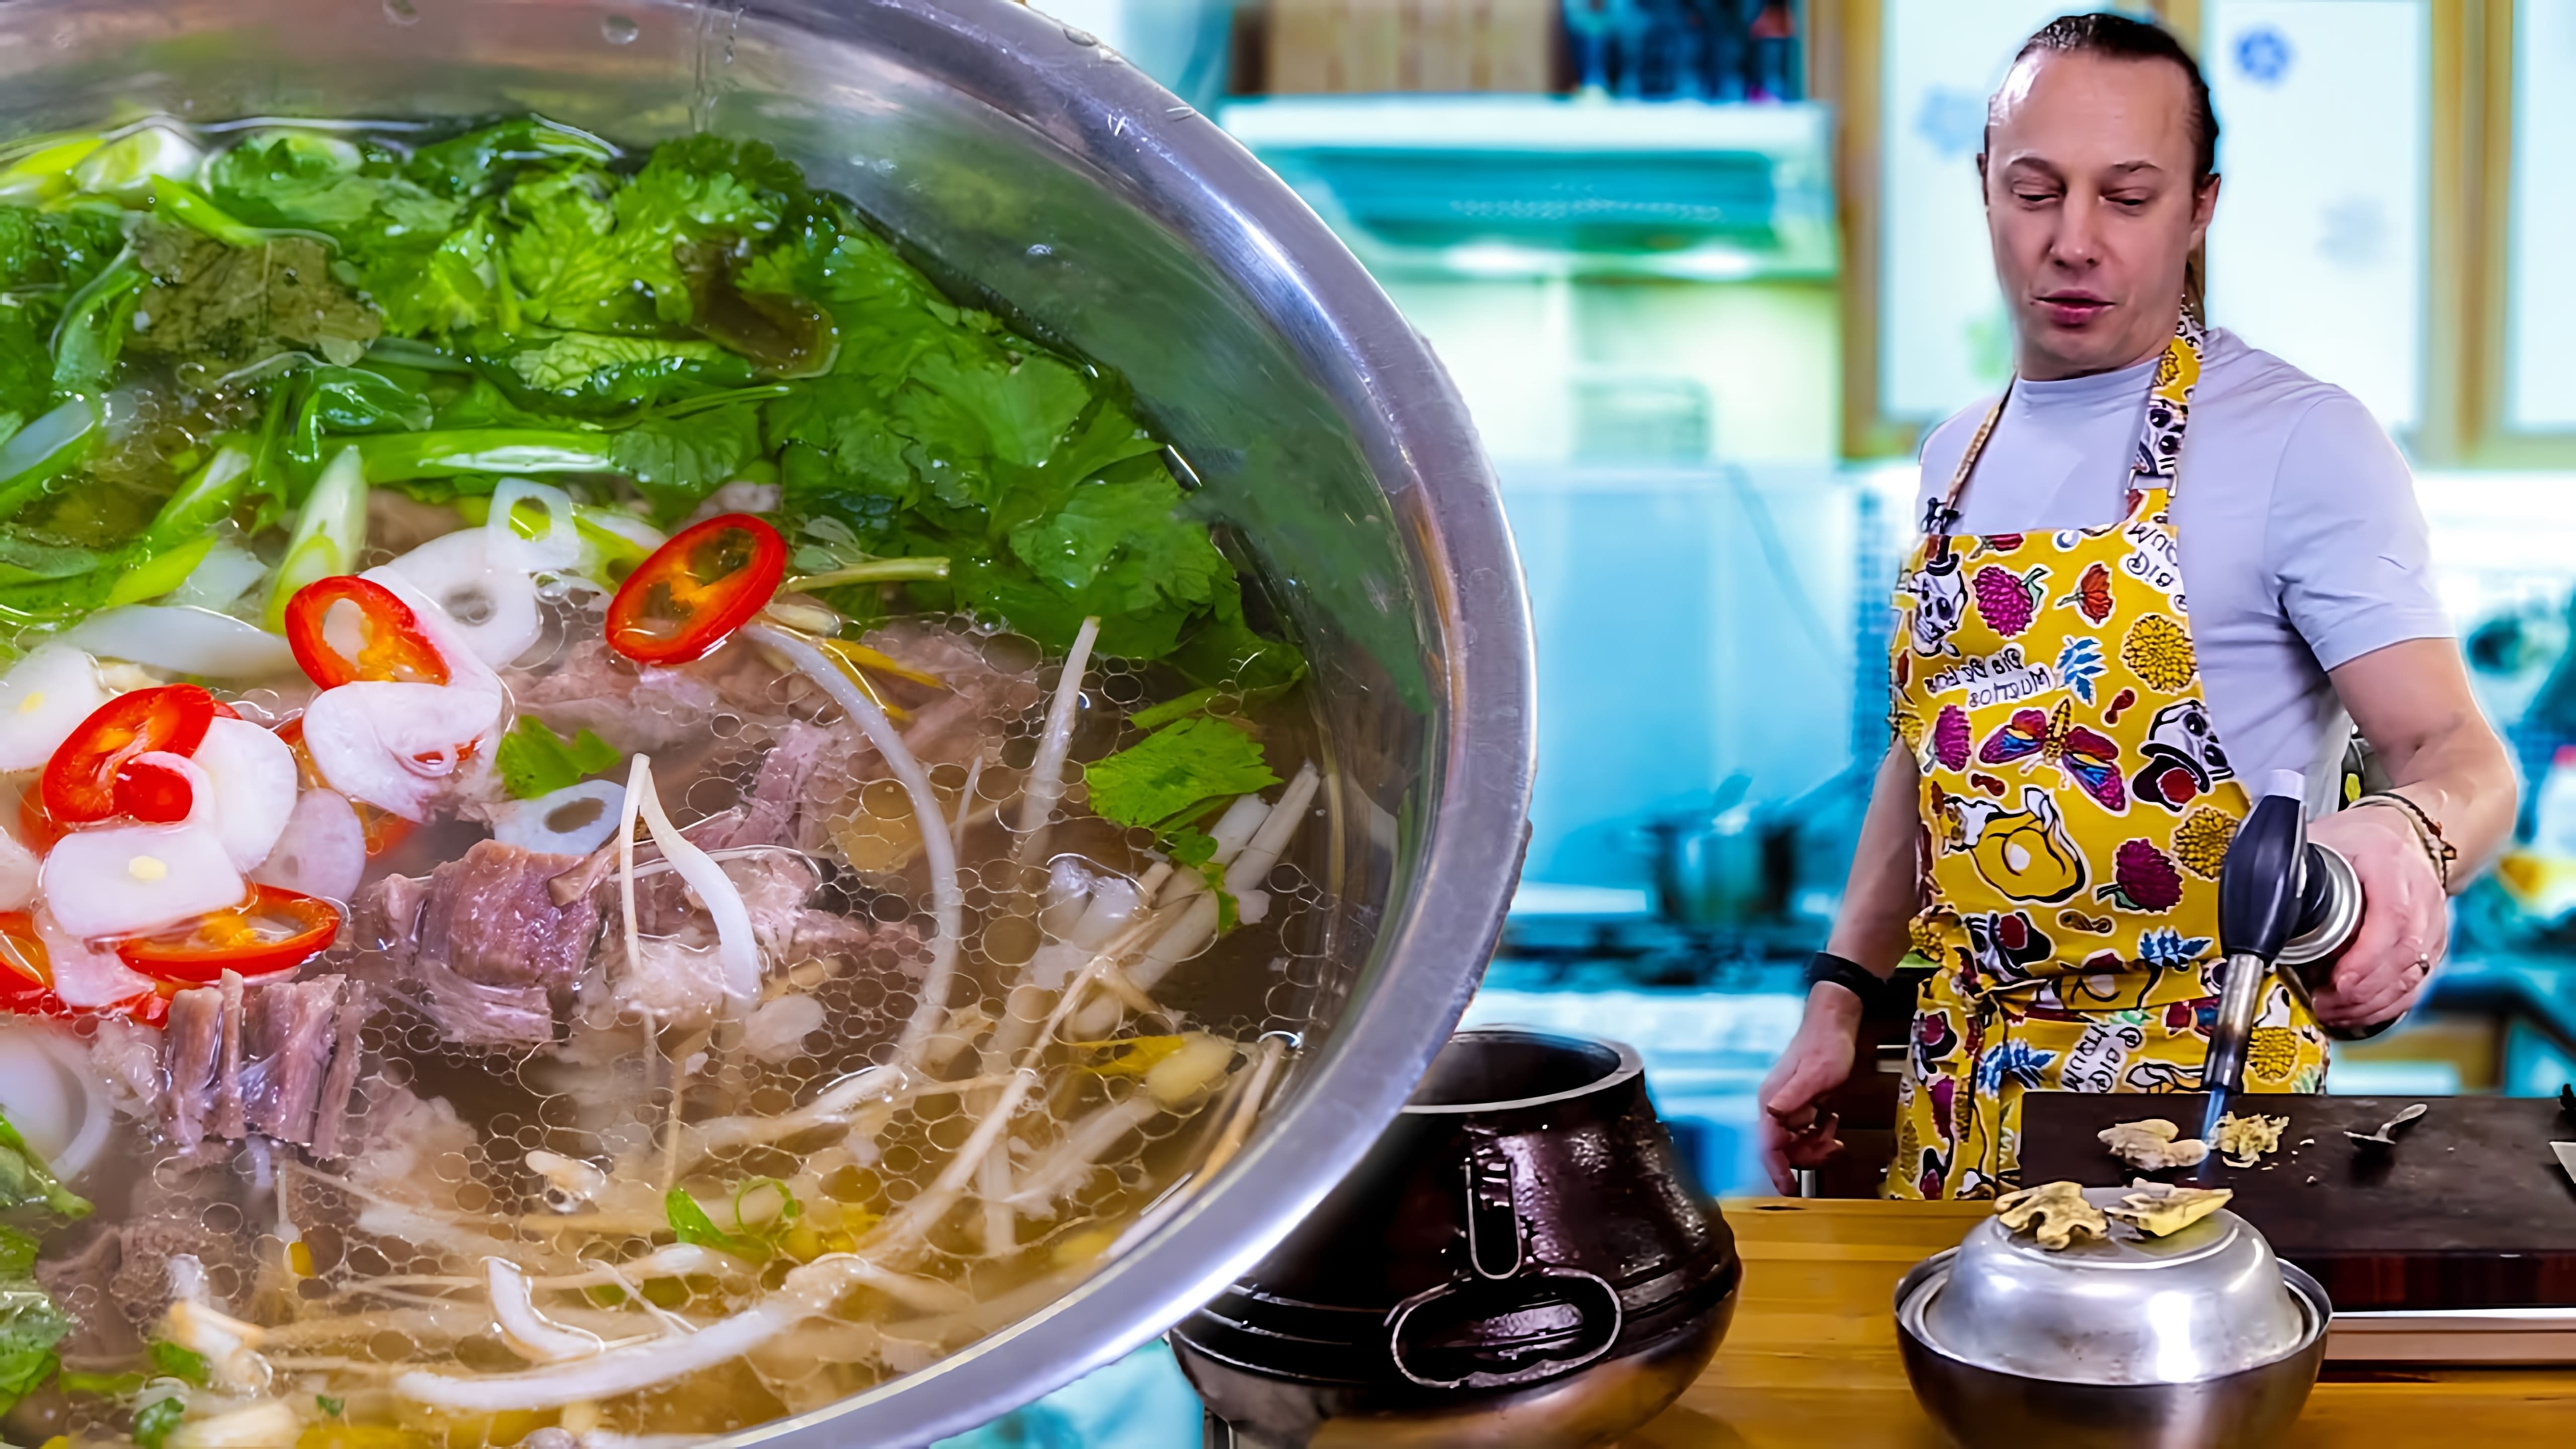 Видео посвящено приготовлению фо, вьетнамского супа, который обычно едят на завтрак